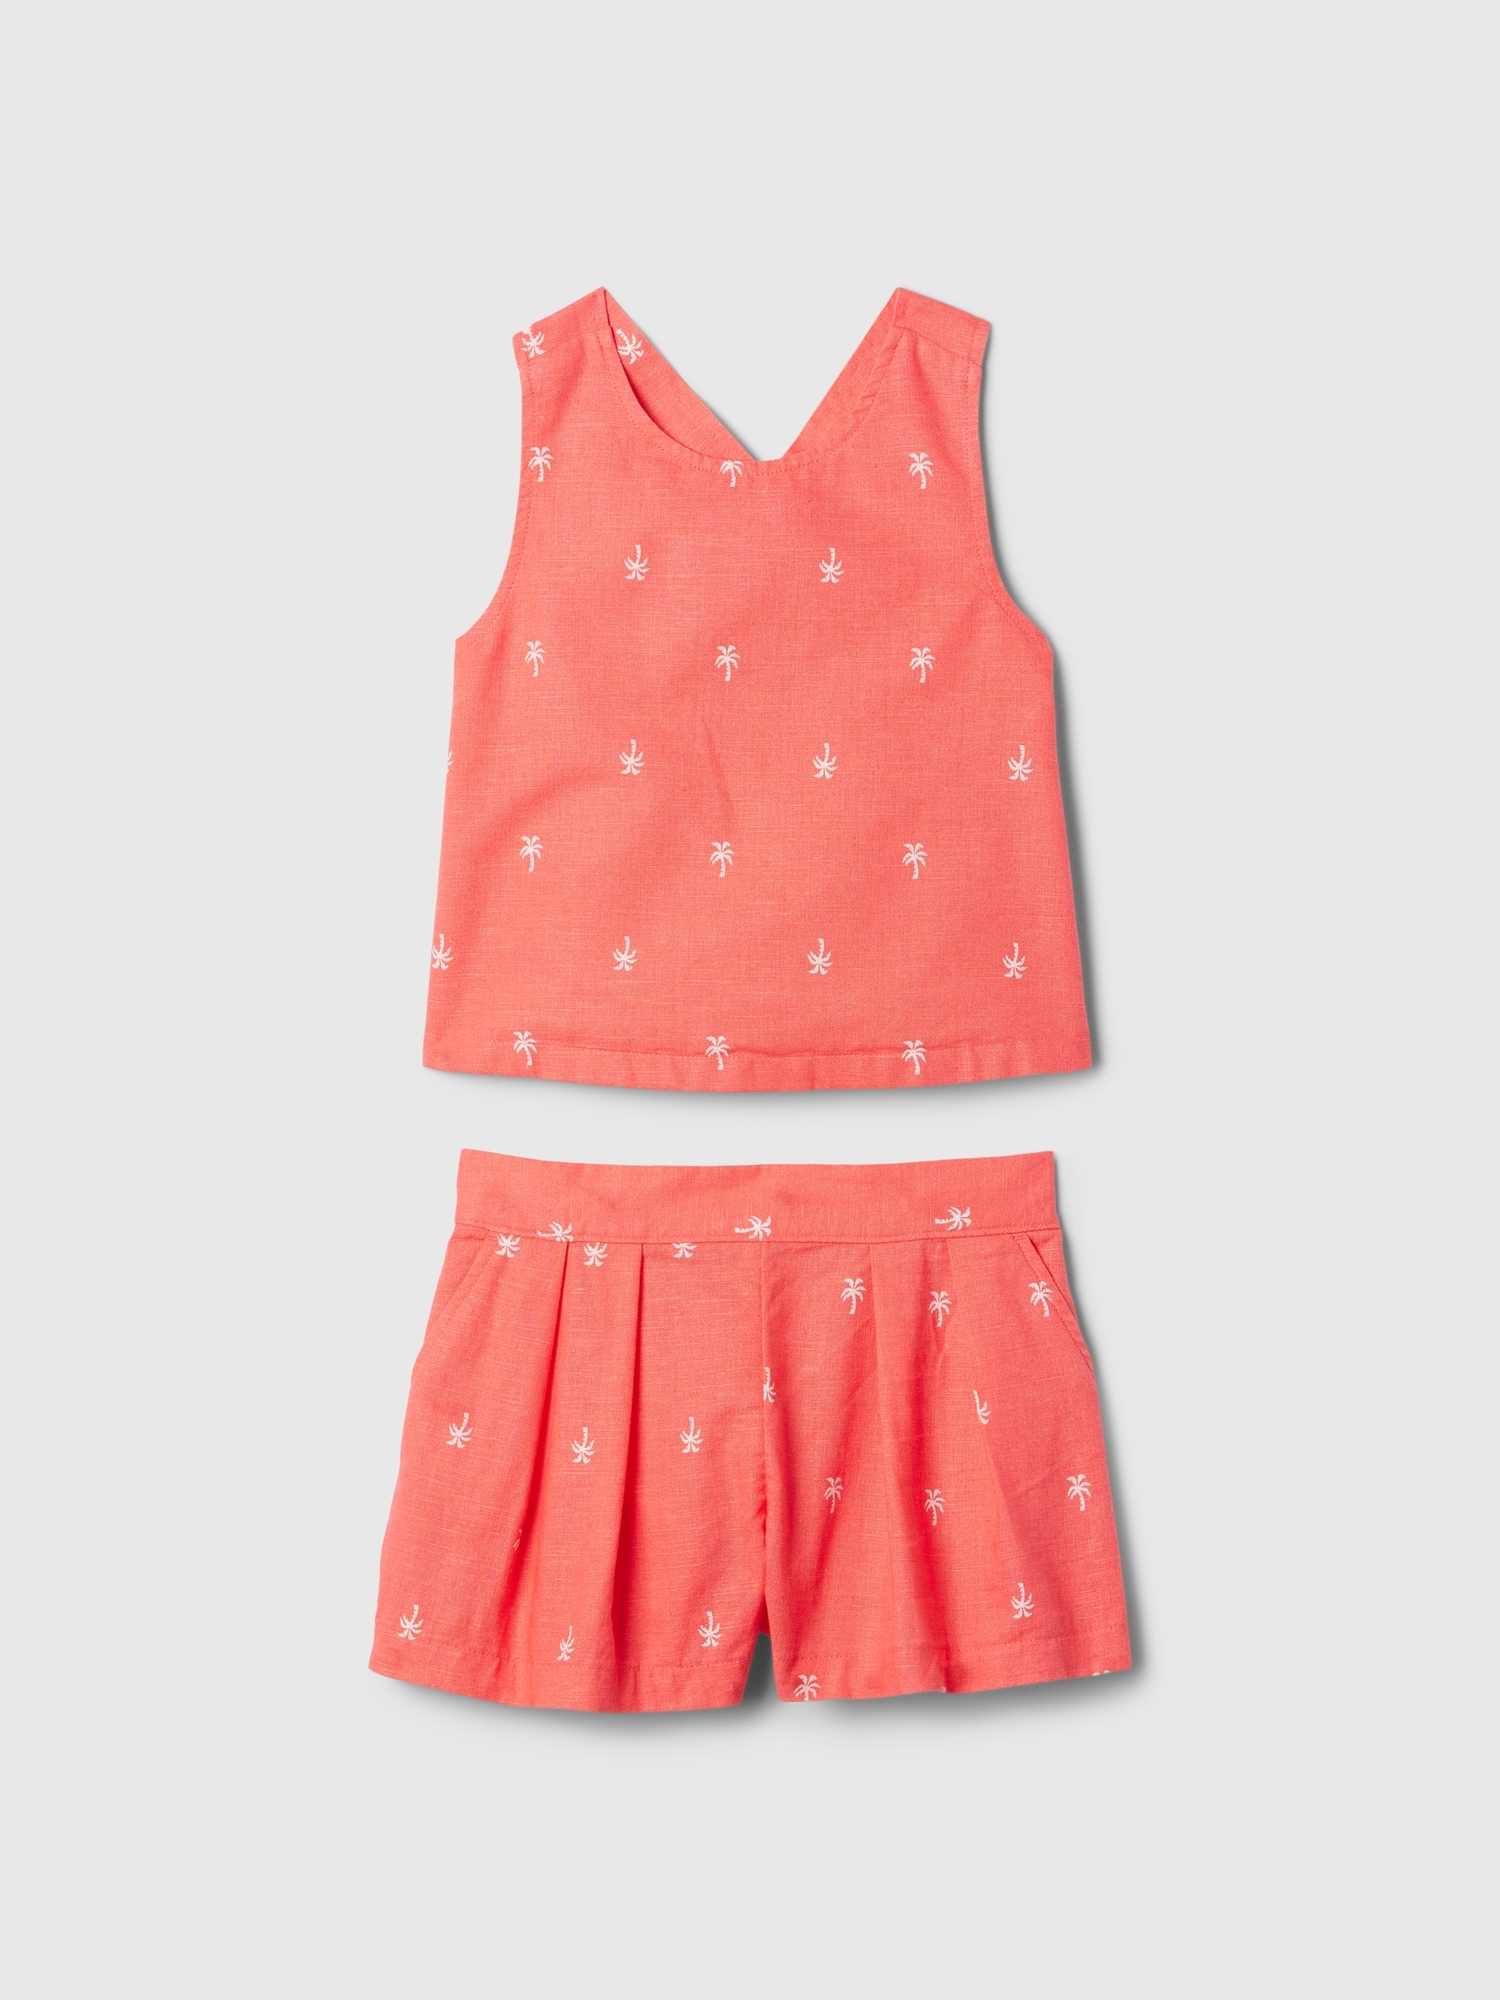 babyGap Linen-Cotton Outfit Set